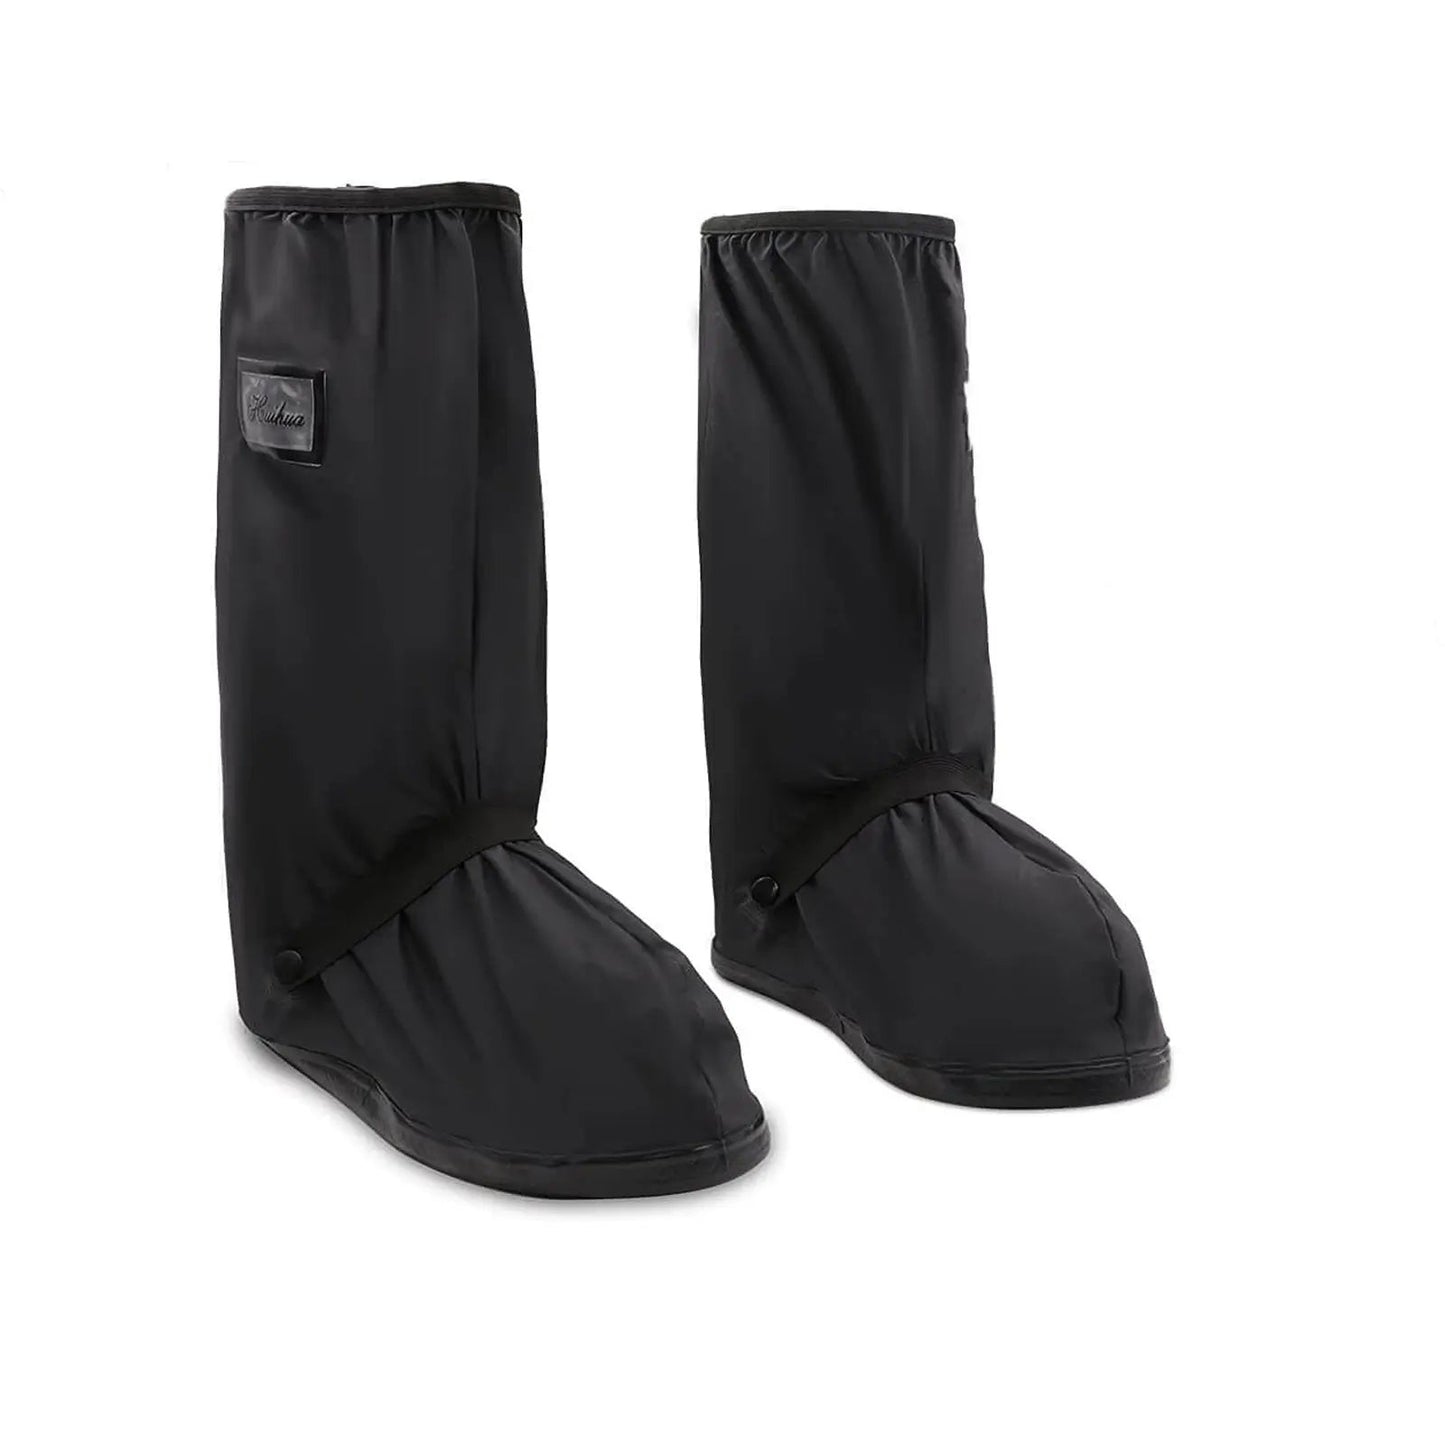 Gardi Waterproof Shoe Covers